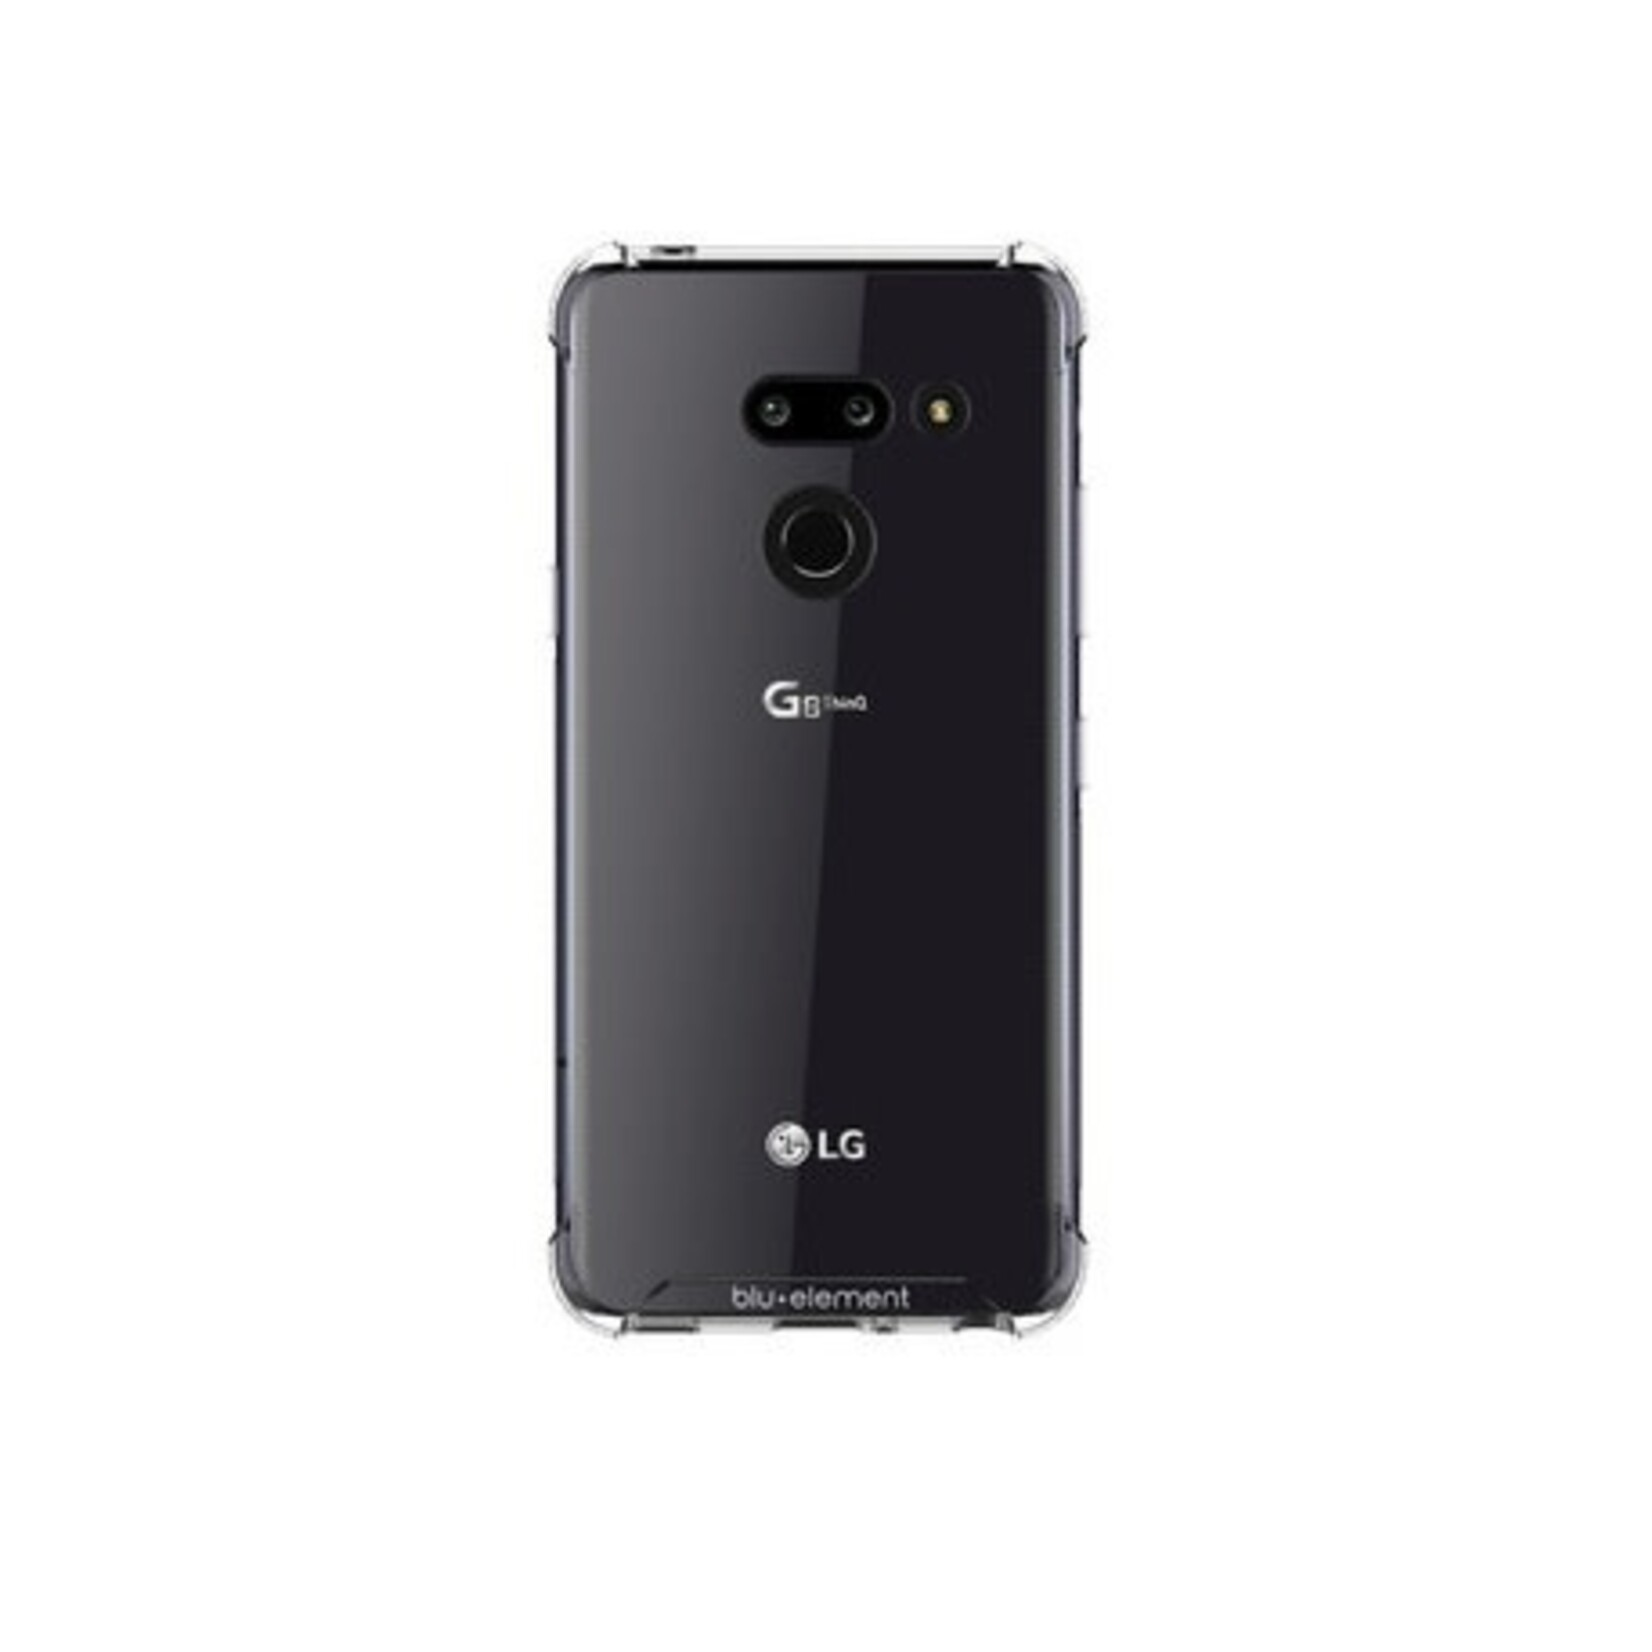 LG ÉTUI LG G8 Blu Element - DropZone Clear Rugged